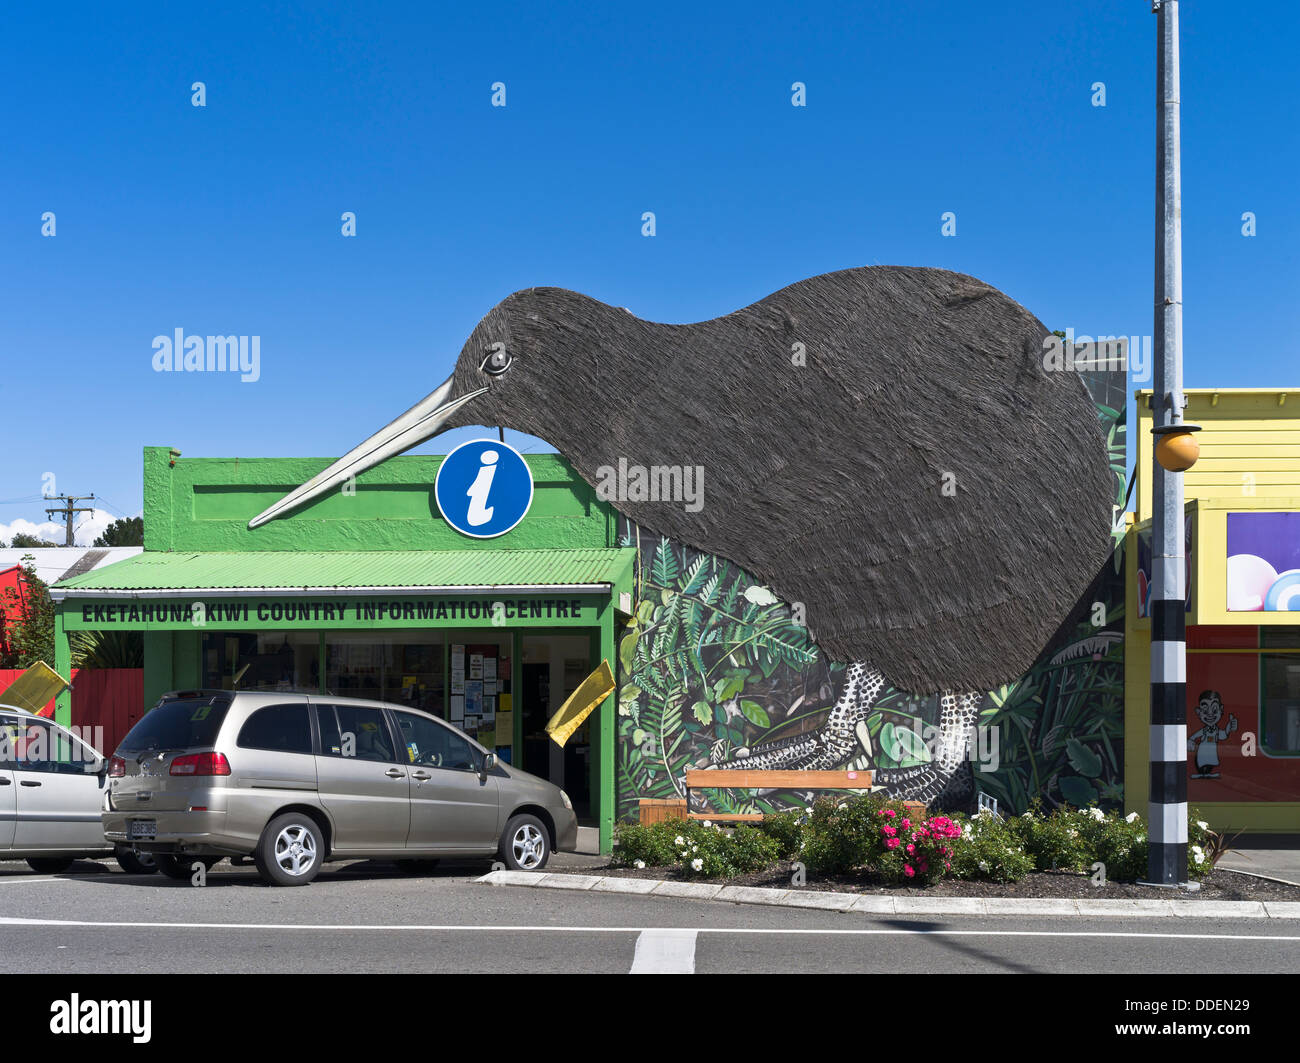 dh EKETAHUNA NOUVELLE-ZÉLANDE I site information Center gaint Kiwi pays signe tourisme centre touristique nz isite bird Banque D'Images